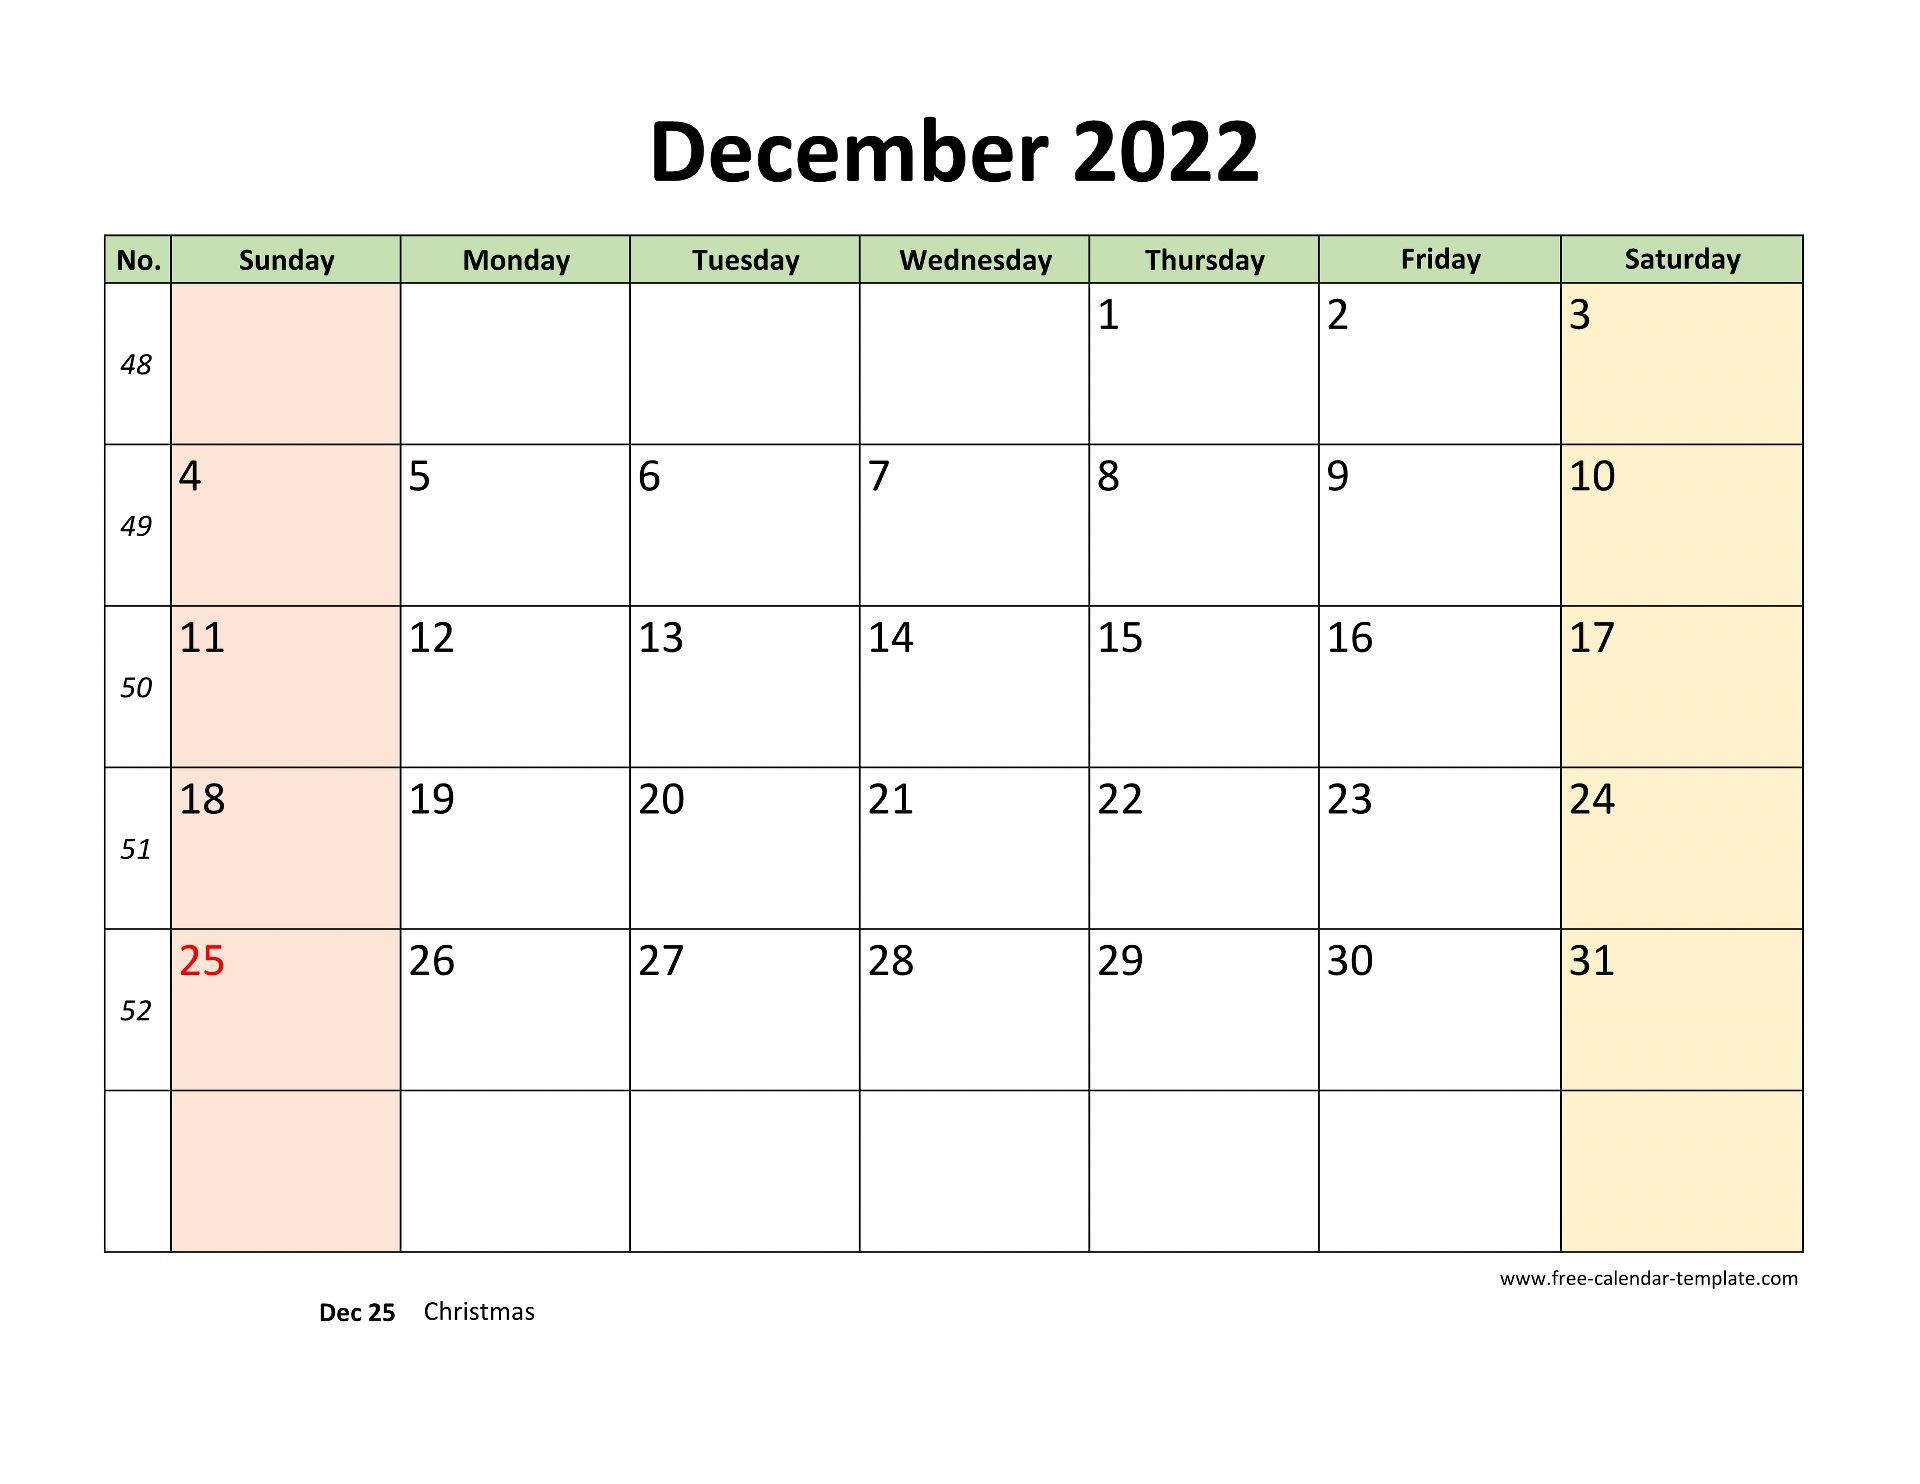 December 2022 Free Calendar Tempplate | Free-Calendar  December 2022 Through February 2022 Calendar